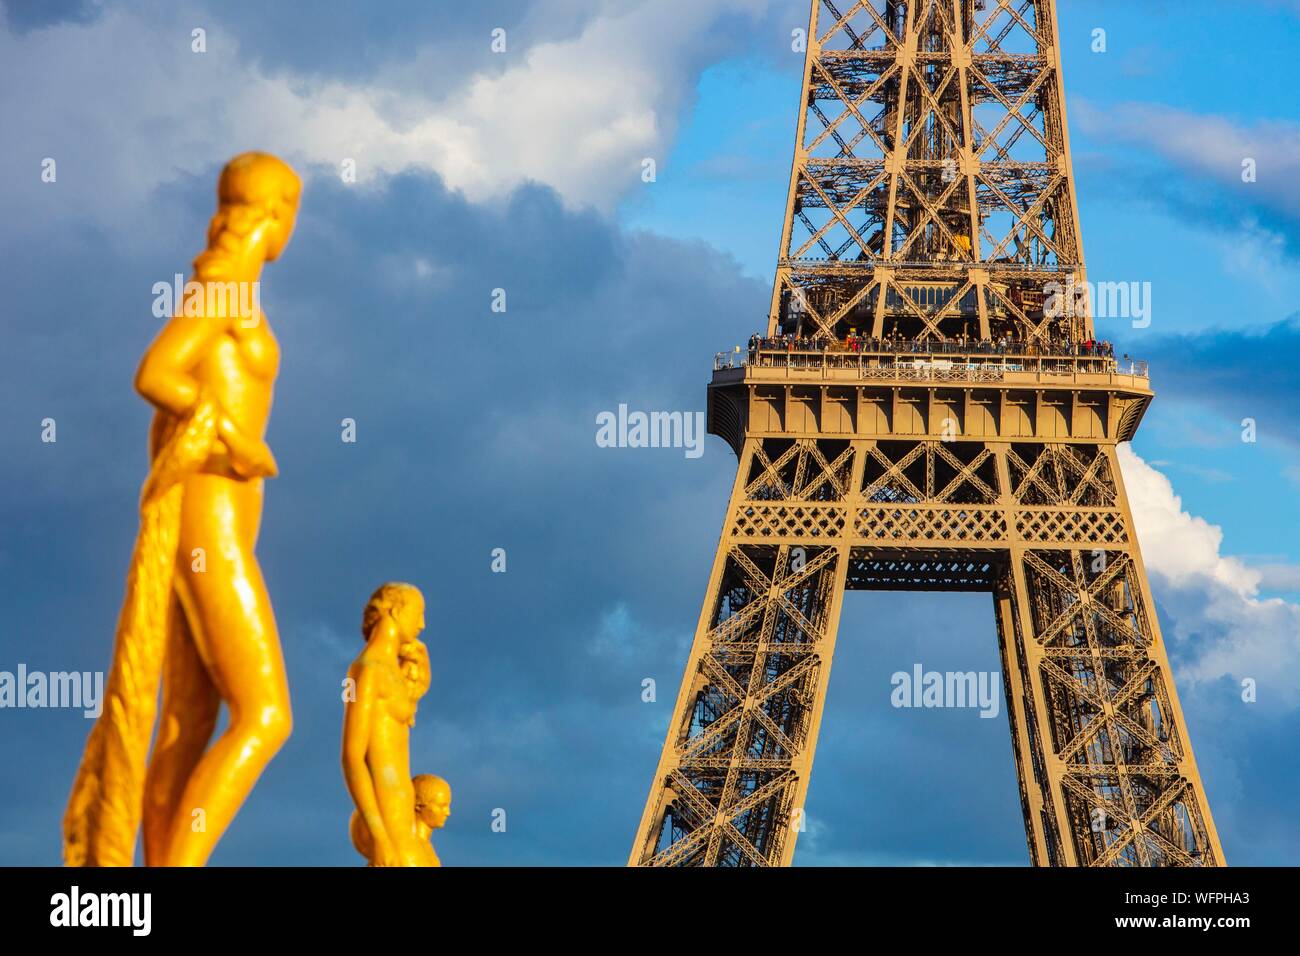 France, Paris, Place du Trocadero, the Eiffel Tower Stock Photo